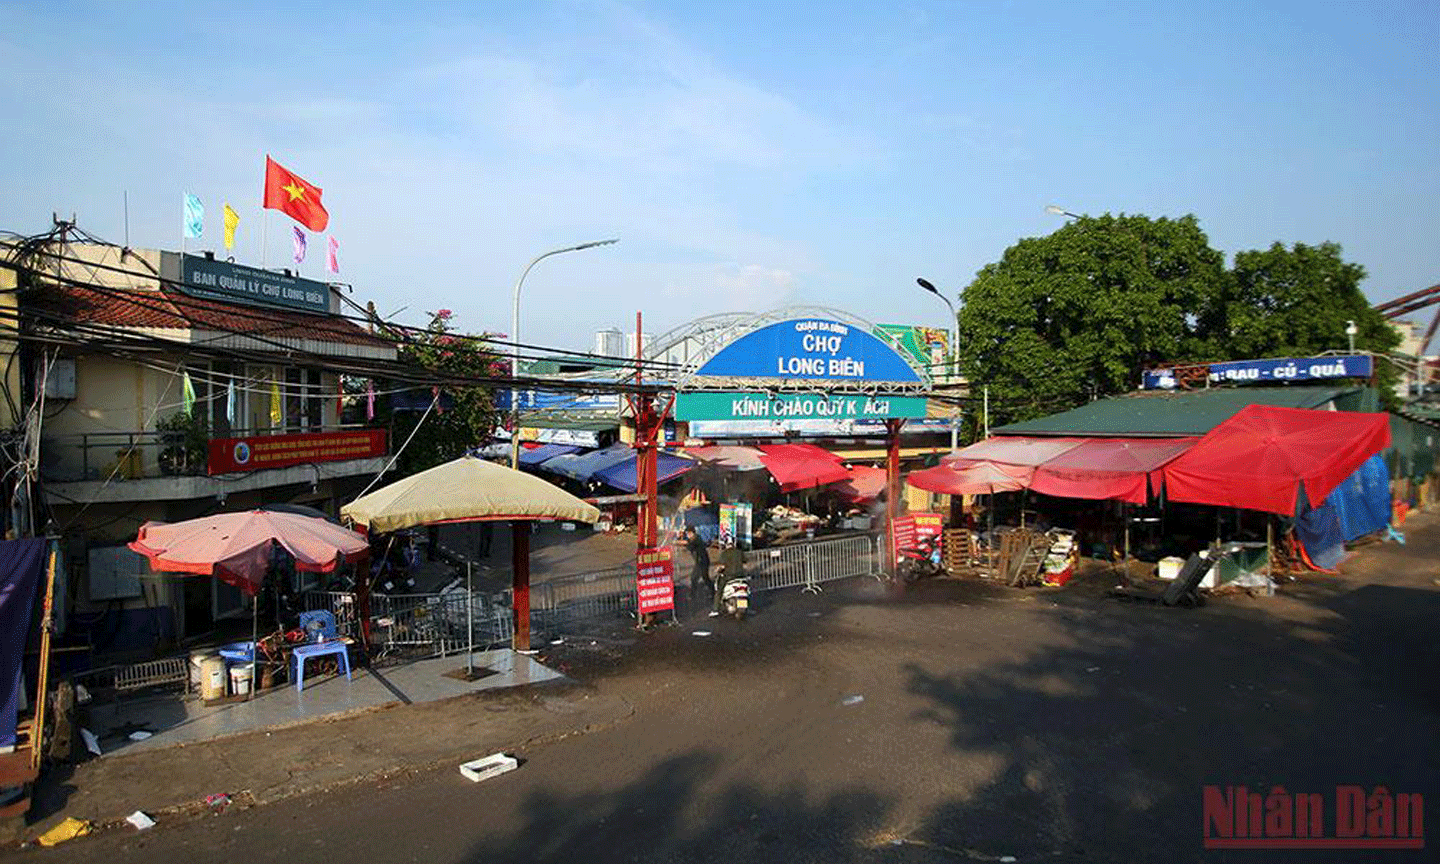 Khu vực chợ Long Biên bị phong tỏa. (Ảnh: DUY LINH)